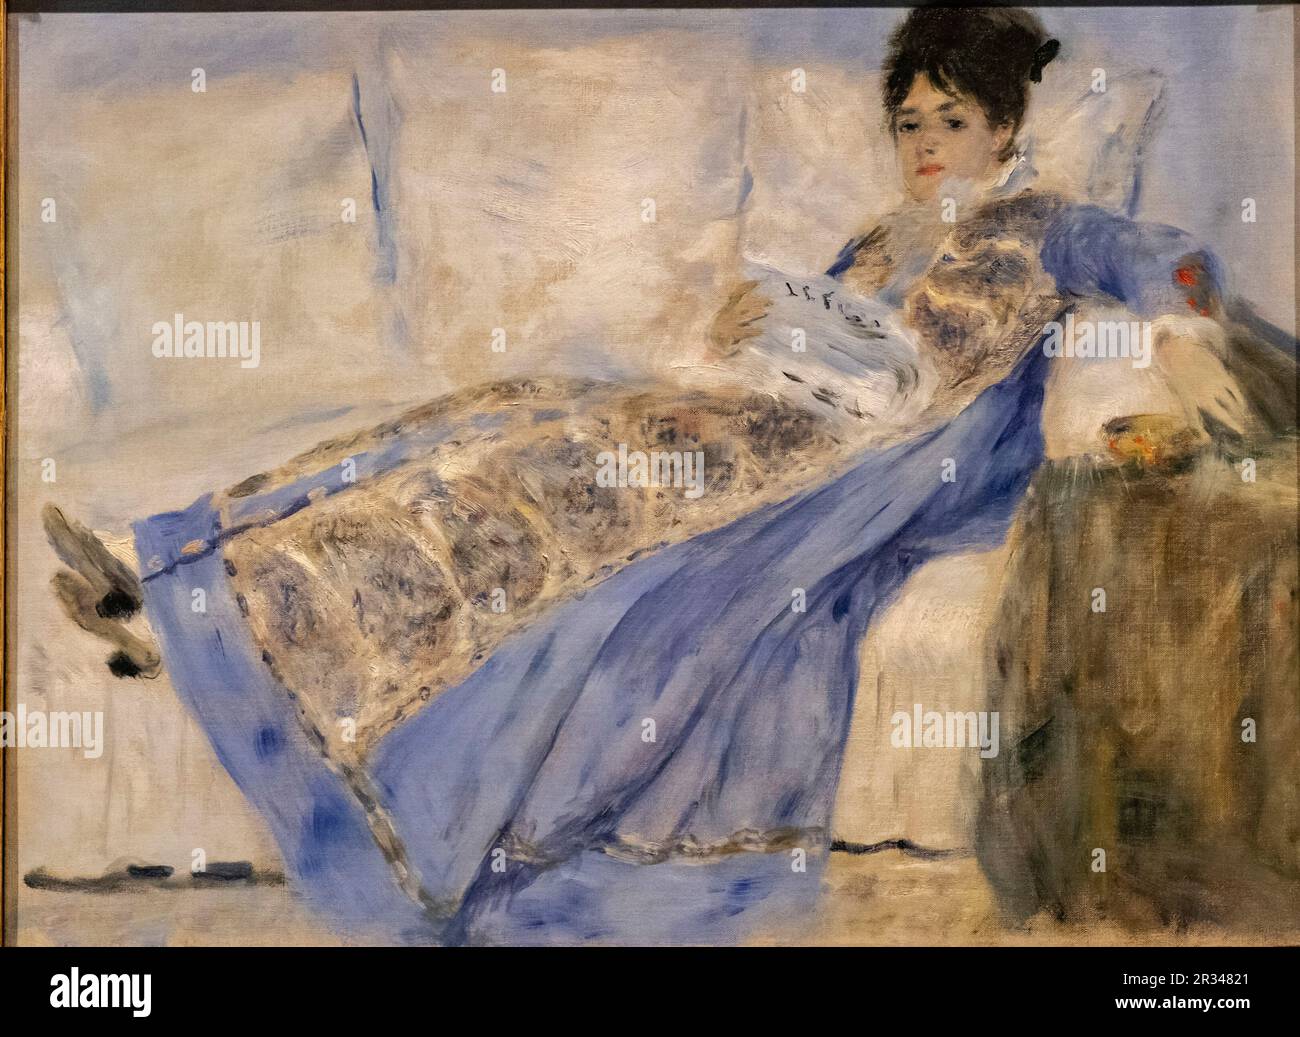 retrato de Madame Claude Monet, Renoir, francia 1872-1874, oleo sobre tela, Fundación Calouste Gulbenkian, («Fundação Calouste Gulbenkian»), Lisboa, Portugal. Stock Photo